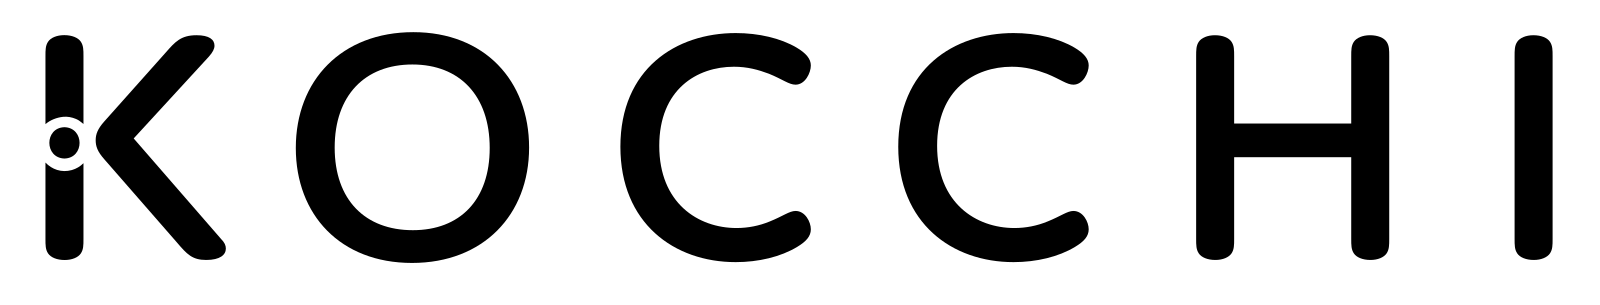 Kocchi logo